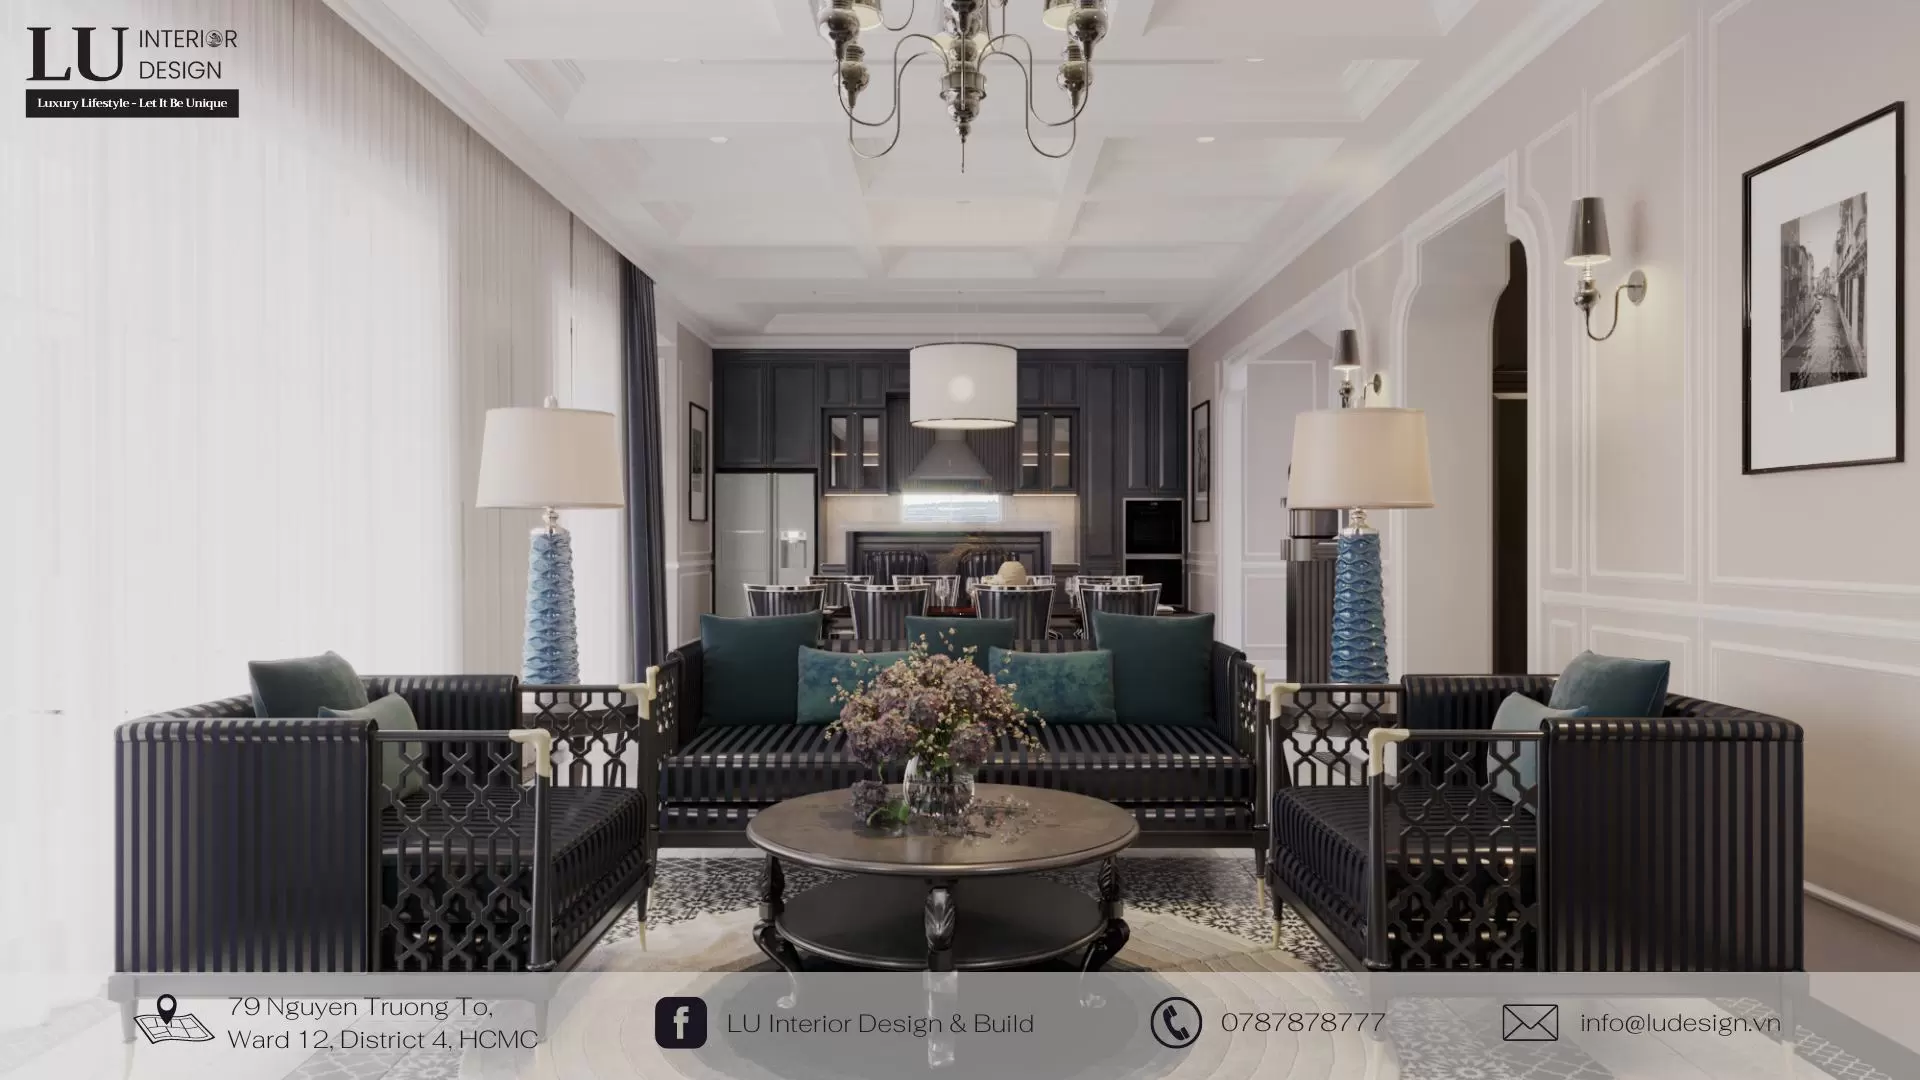 Bộ Sofa gỗ lớn với họa tiết kỷ hà là đặc điểm nhận diện của phòng khách biệt thự Indochine | Dự án Swan Bay Villa - LU Design.